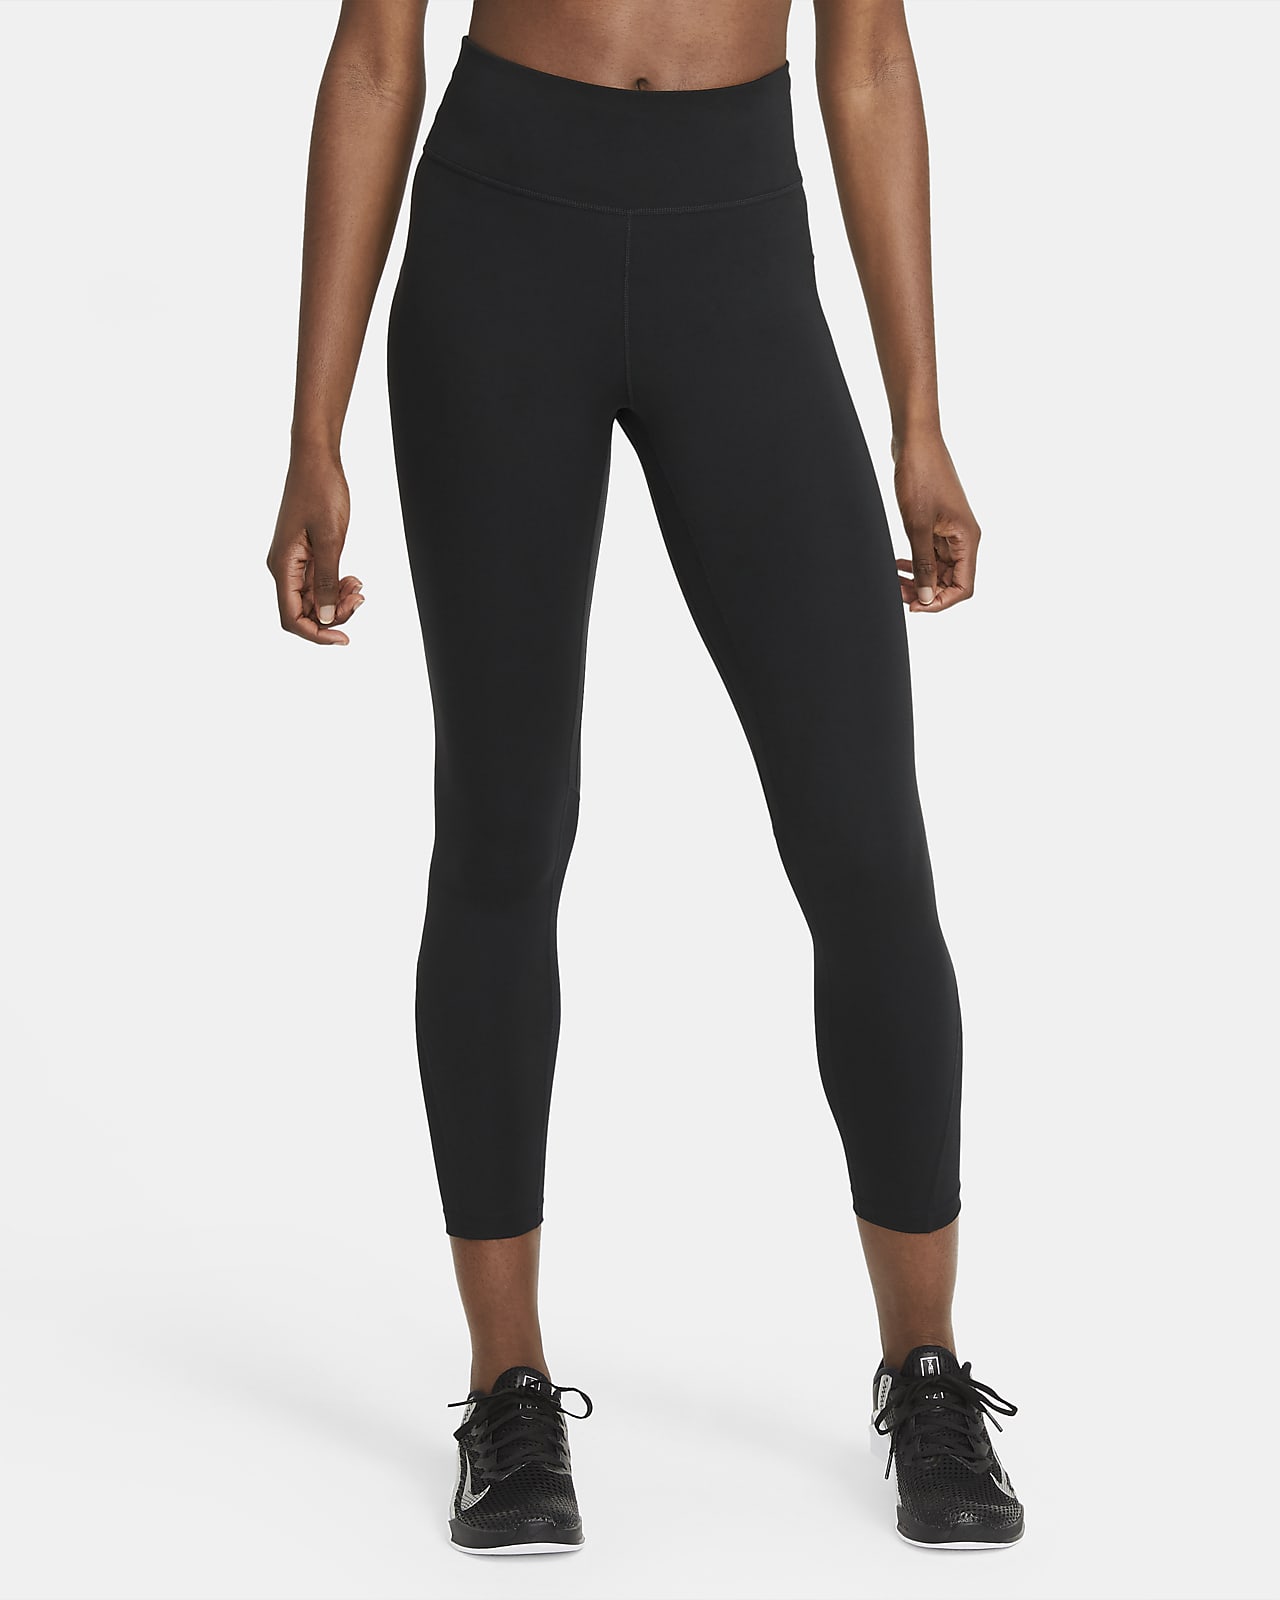 Γυναικείο κολάν μεσαίου ύψους 7/8 με φάσες από διχτυωτό υλικό Nike One